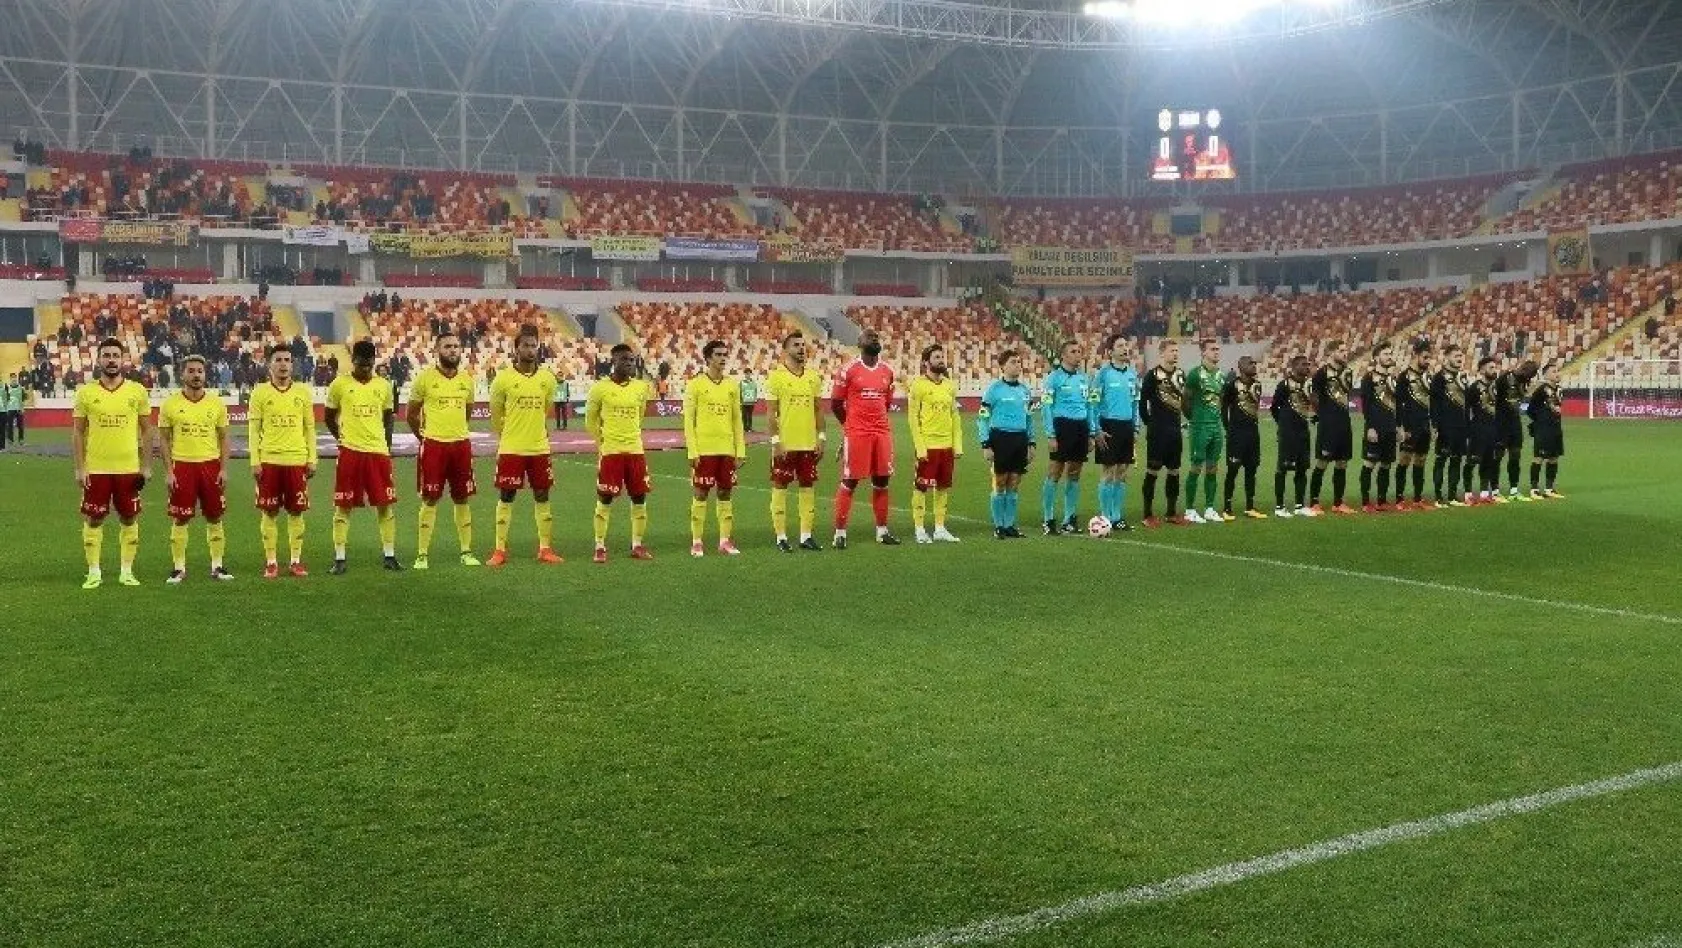 Ziraat Türkiye Kupası: Evkur Yeni Malatyaspor: 1 - Osmanlıspor: 1 (İlk yarı)
